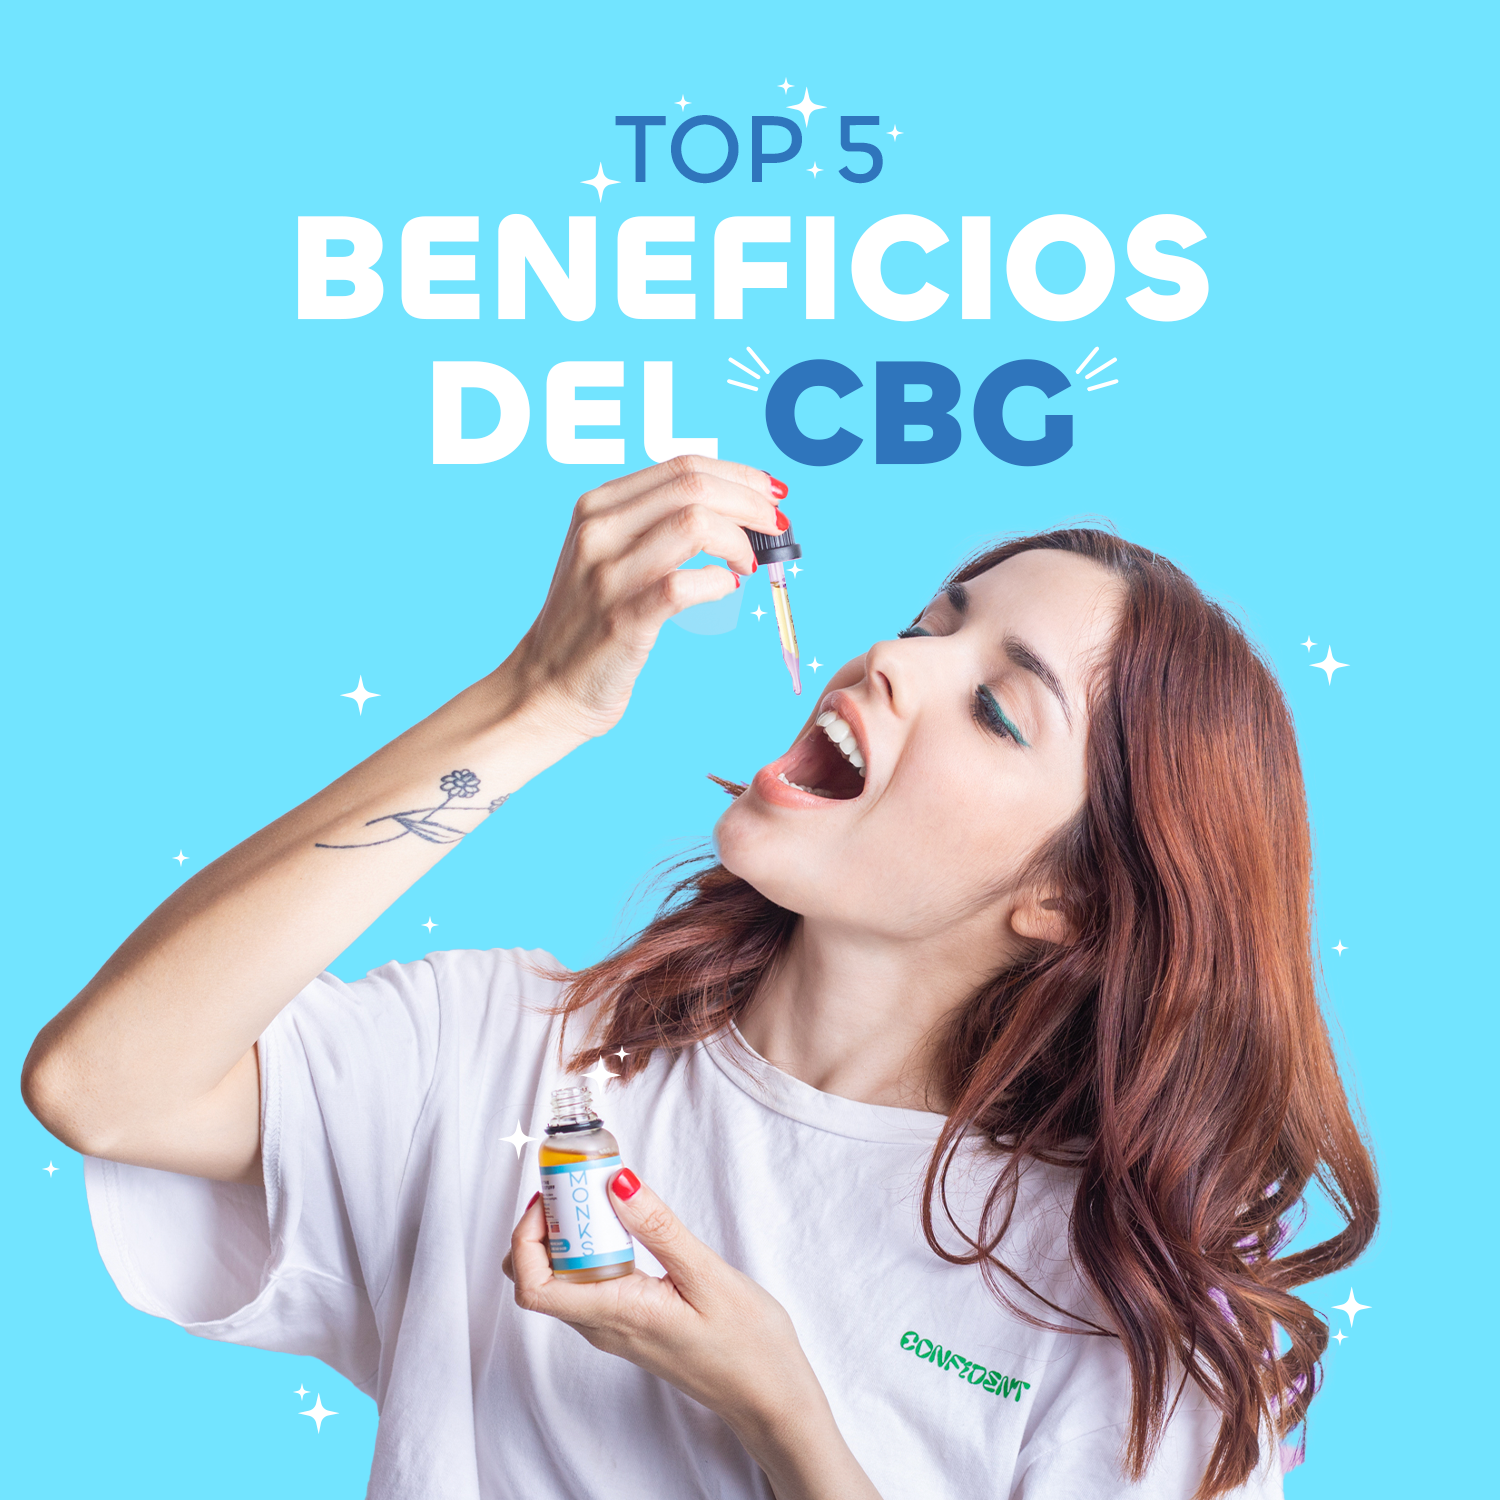 TOP 5 BENEFICIOS DEL CBG